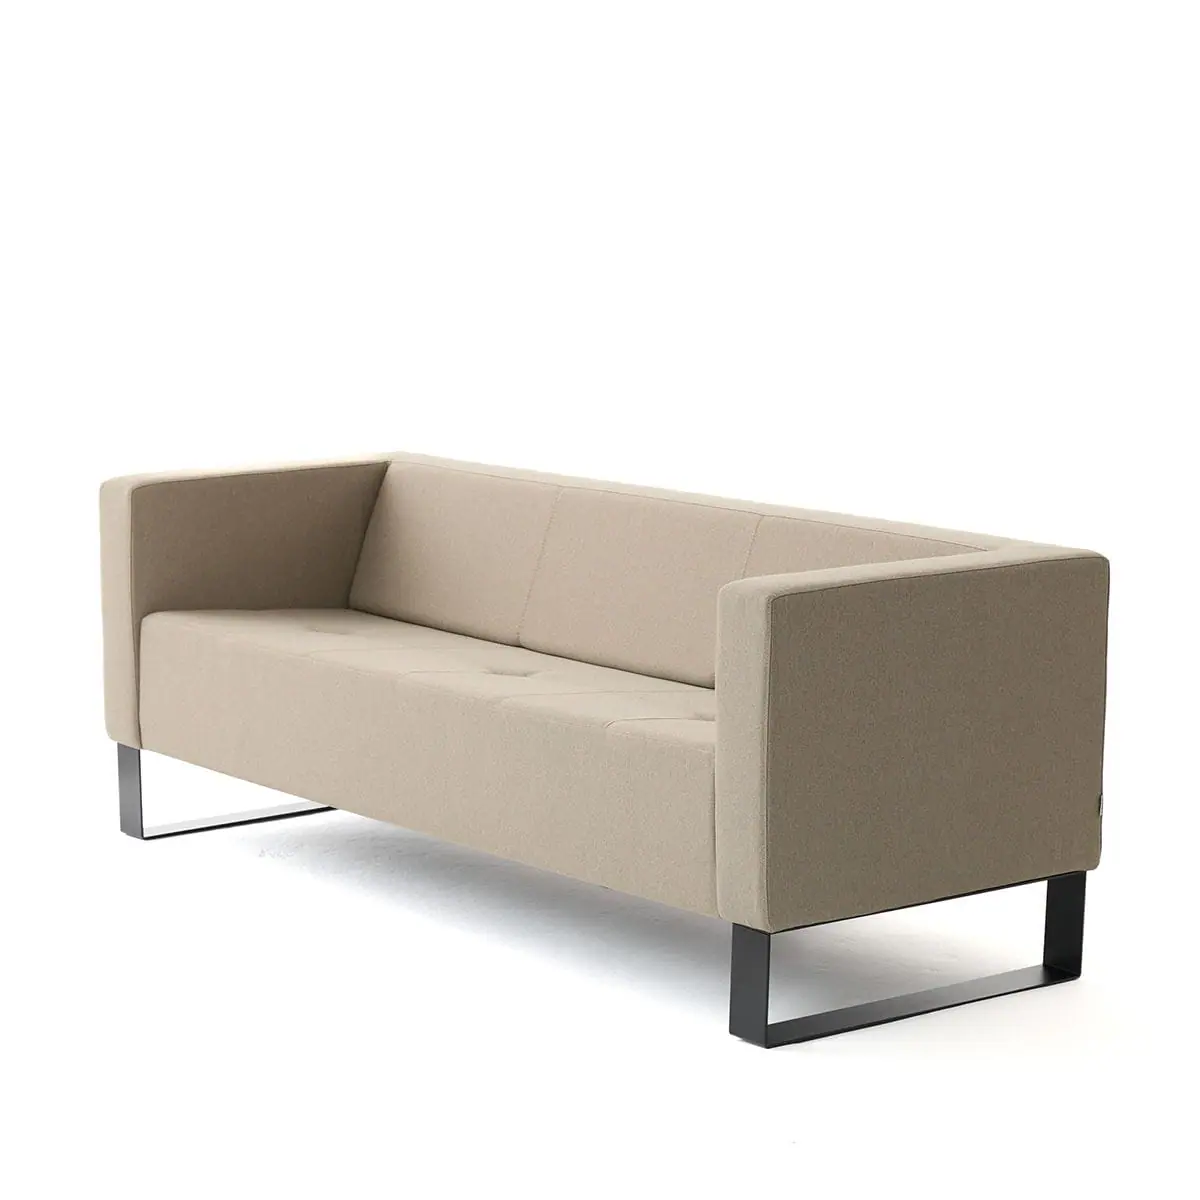 delaoliva-etna-soft-lounge-seating-006